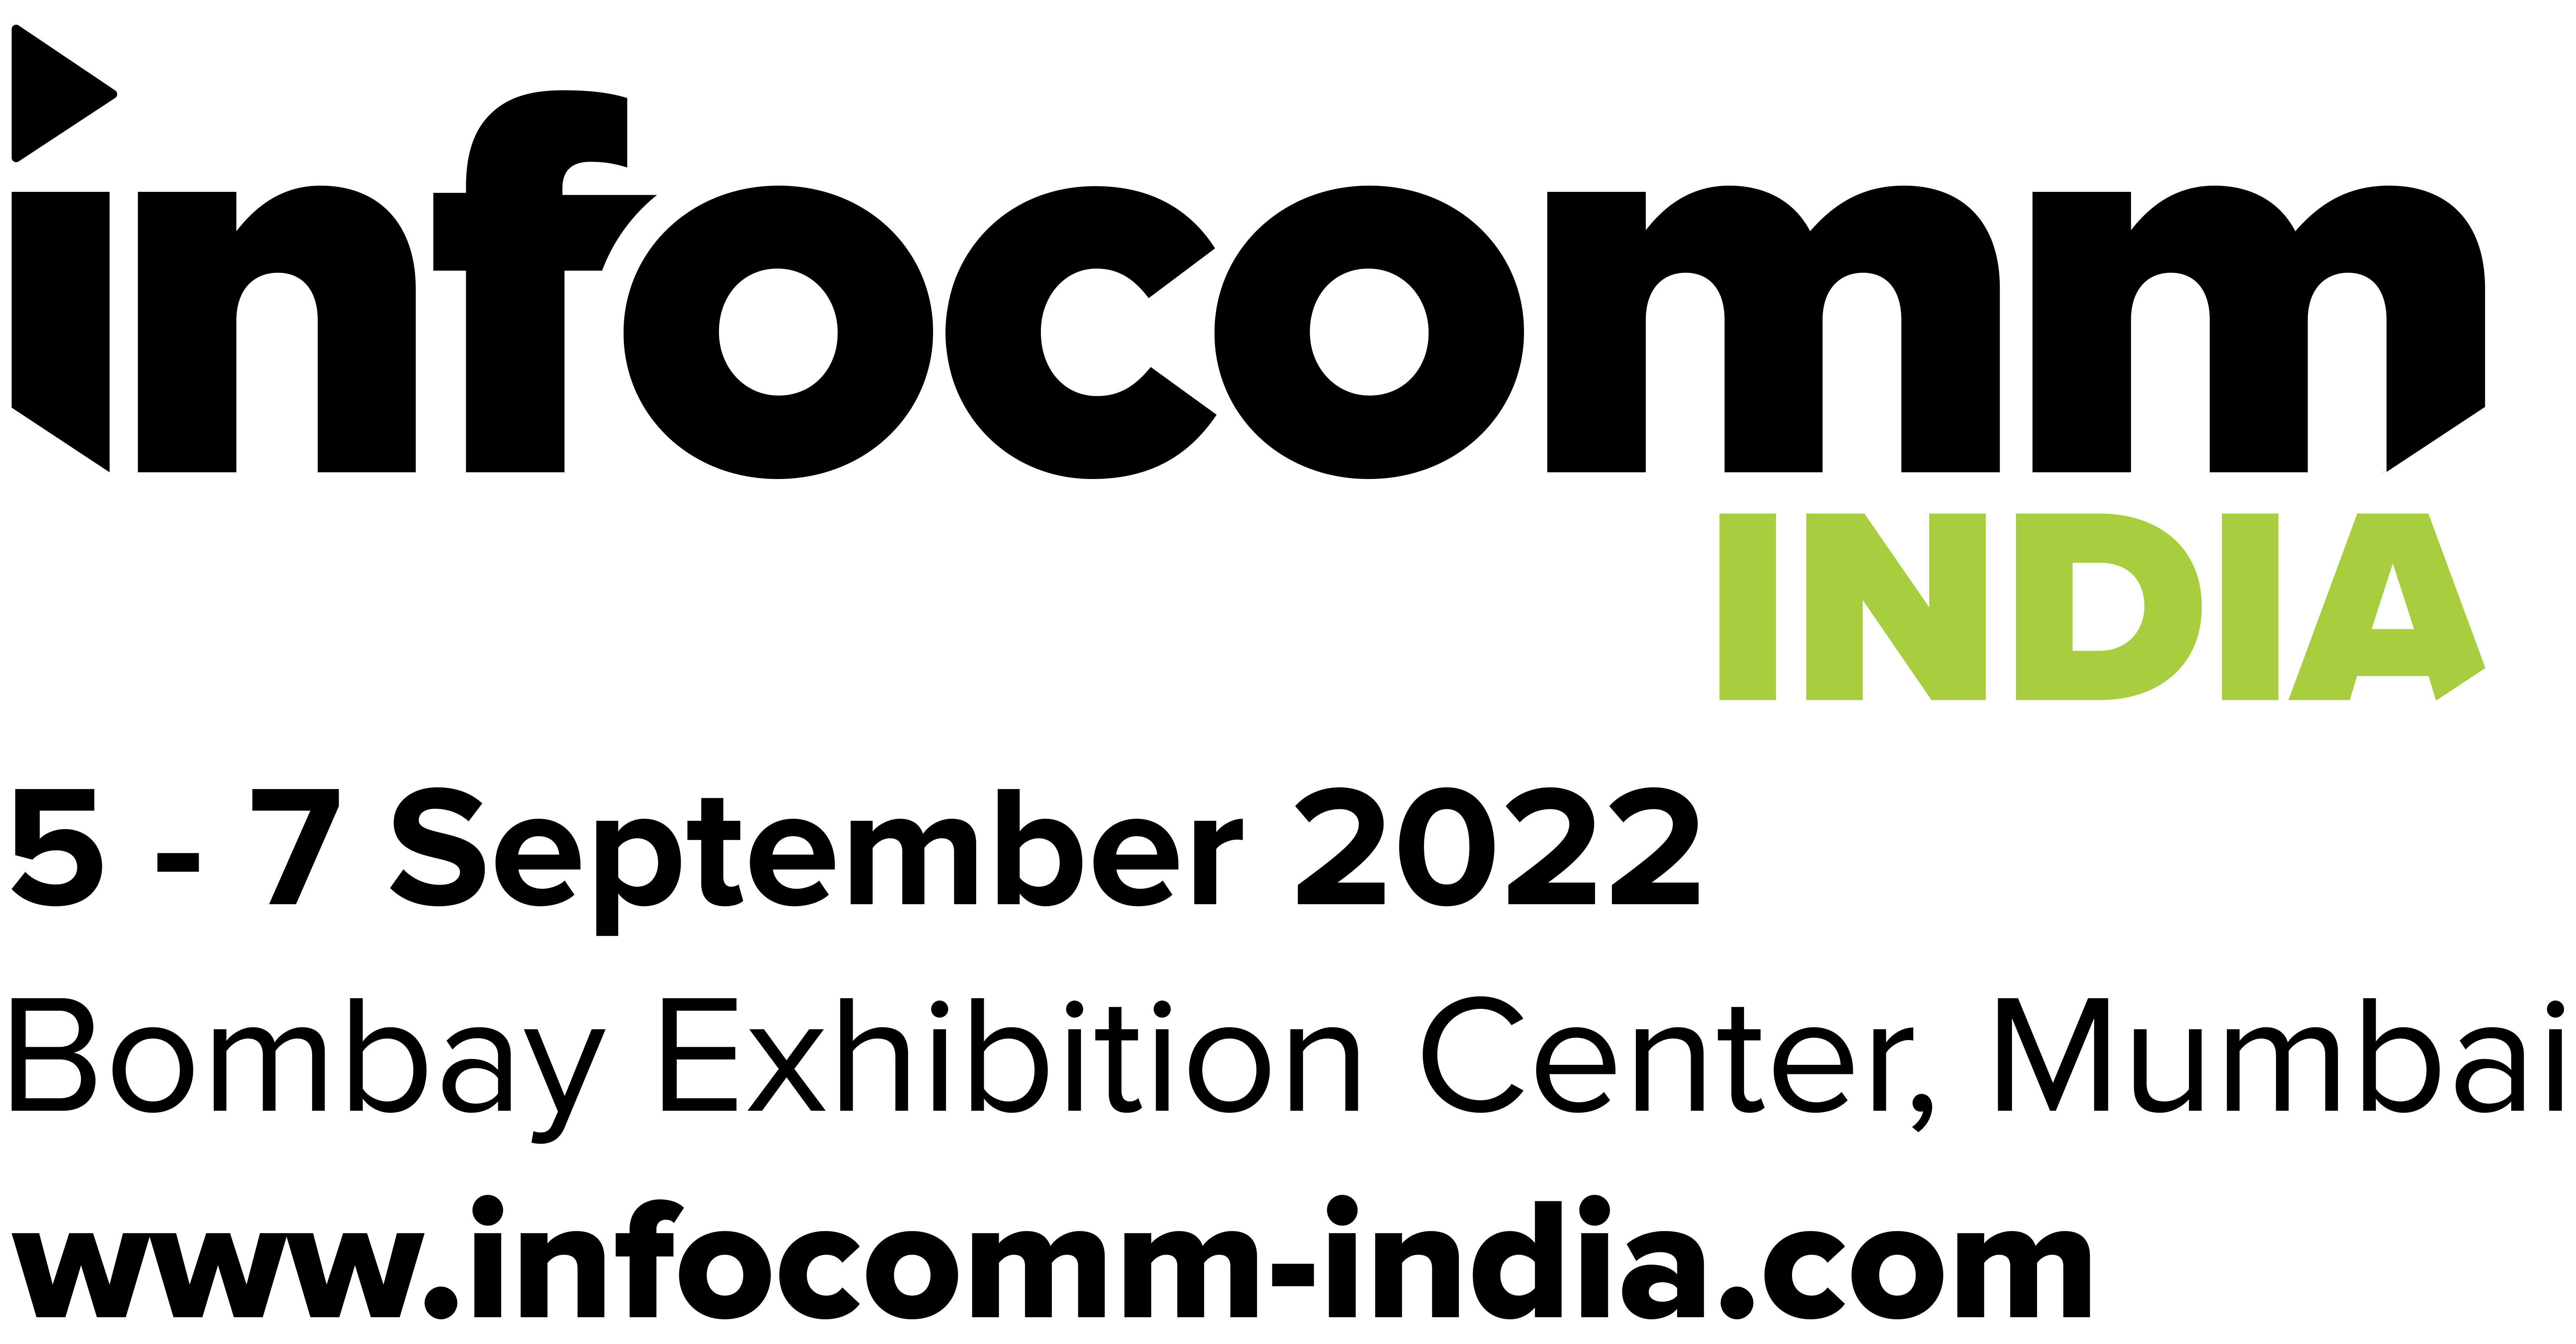 Infocomm India